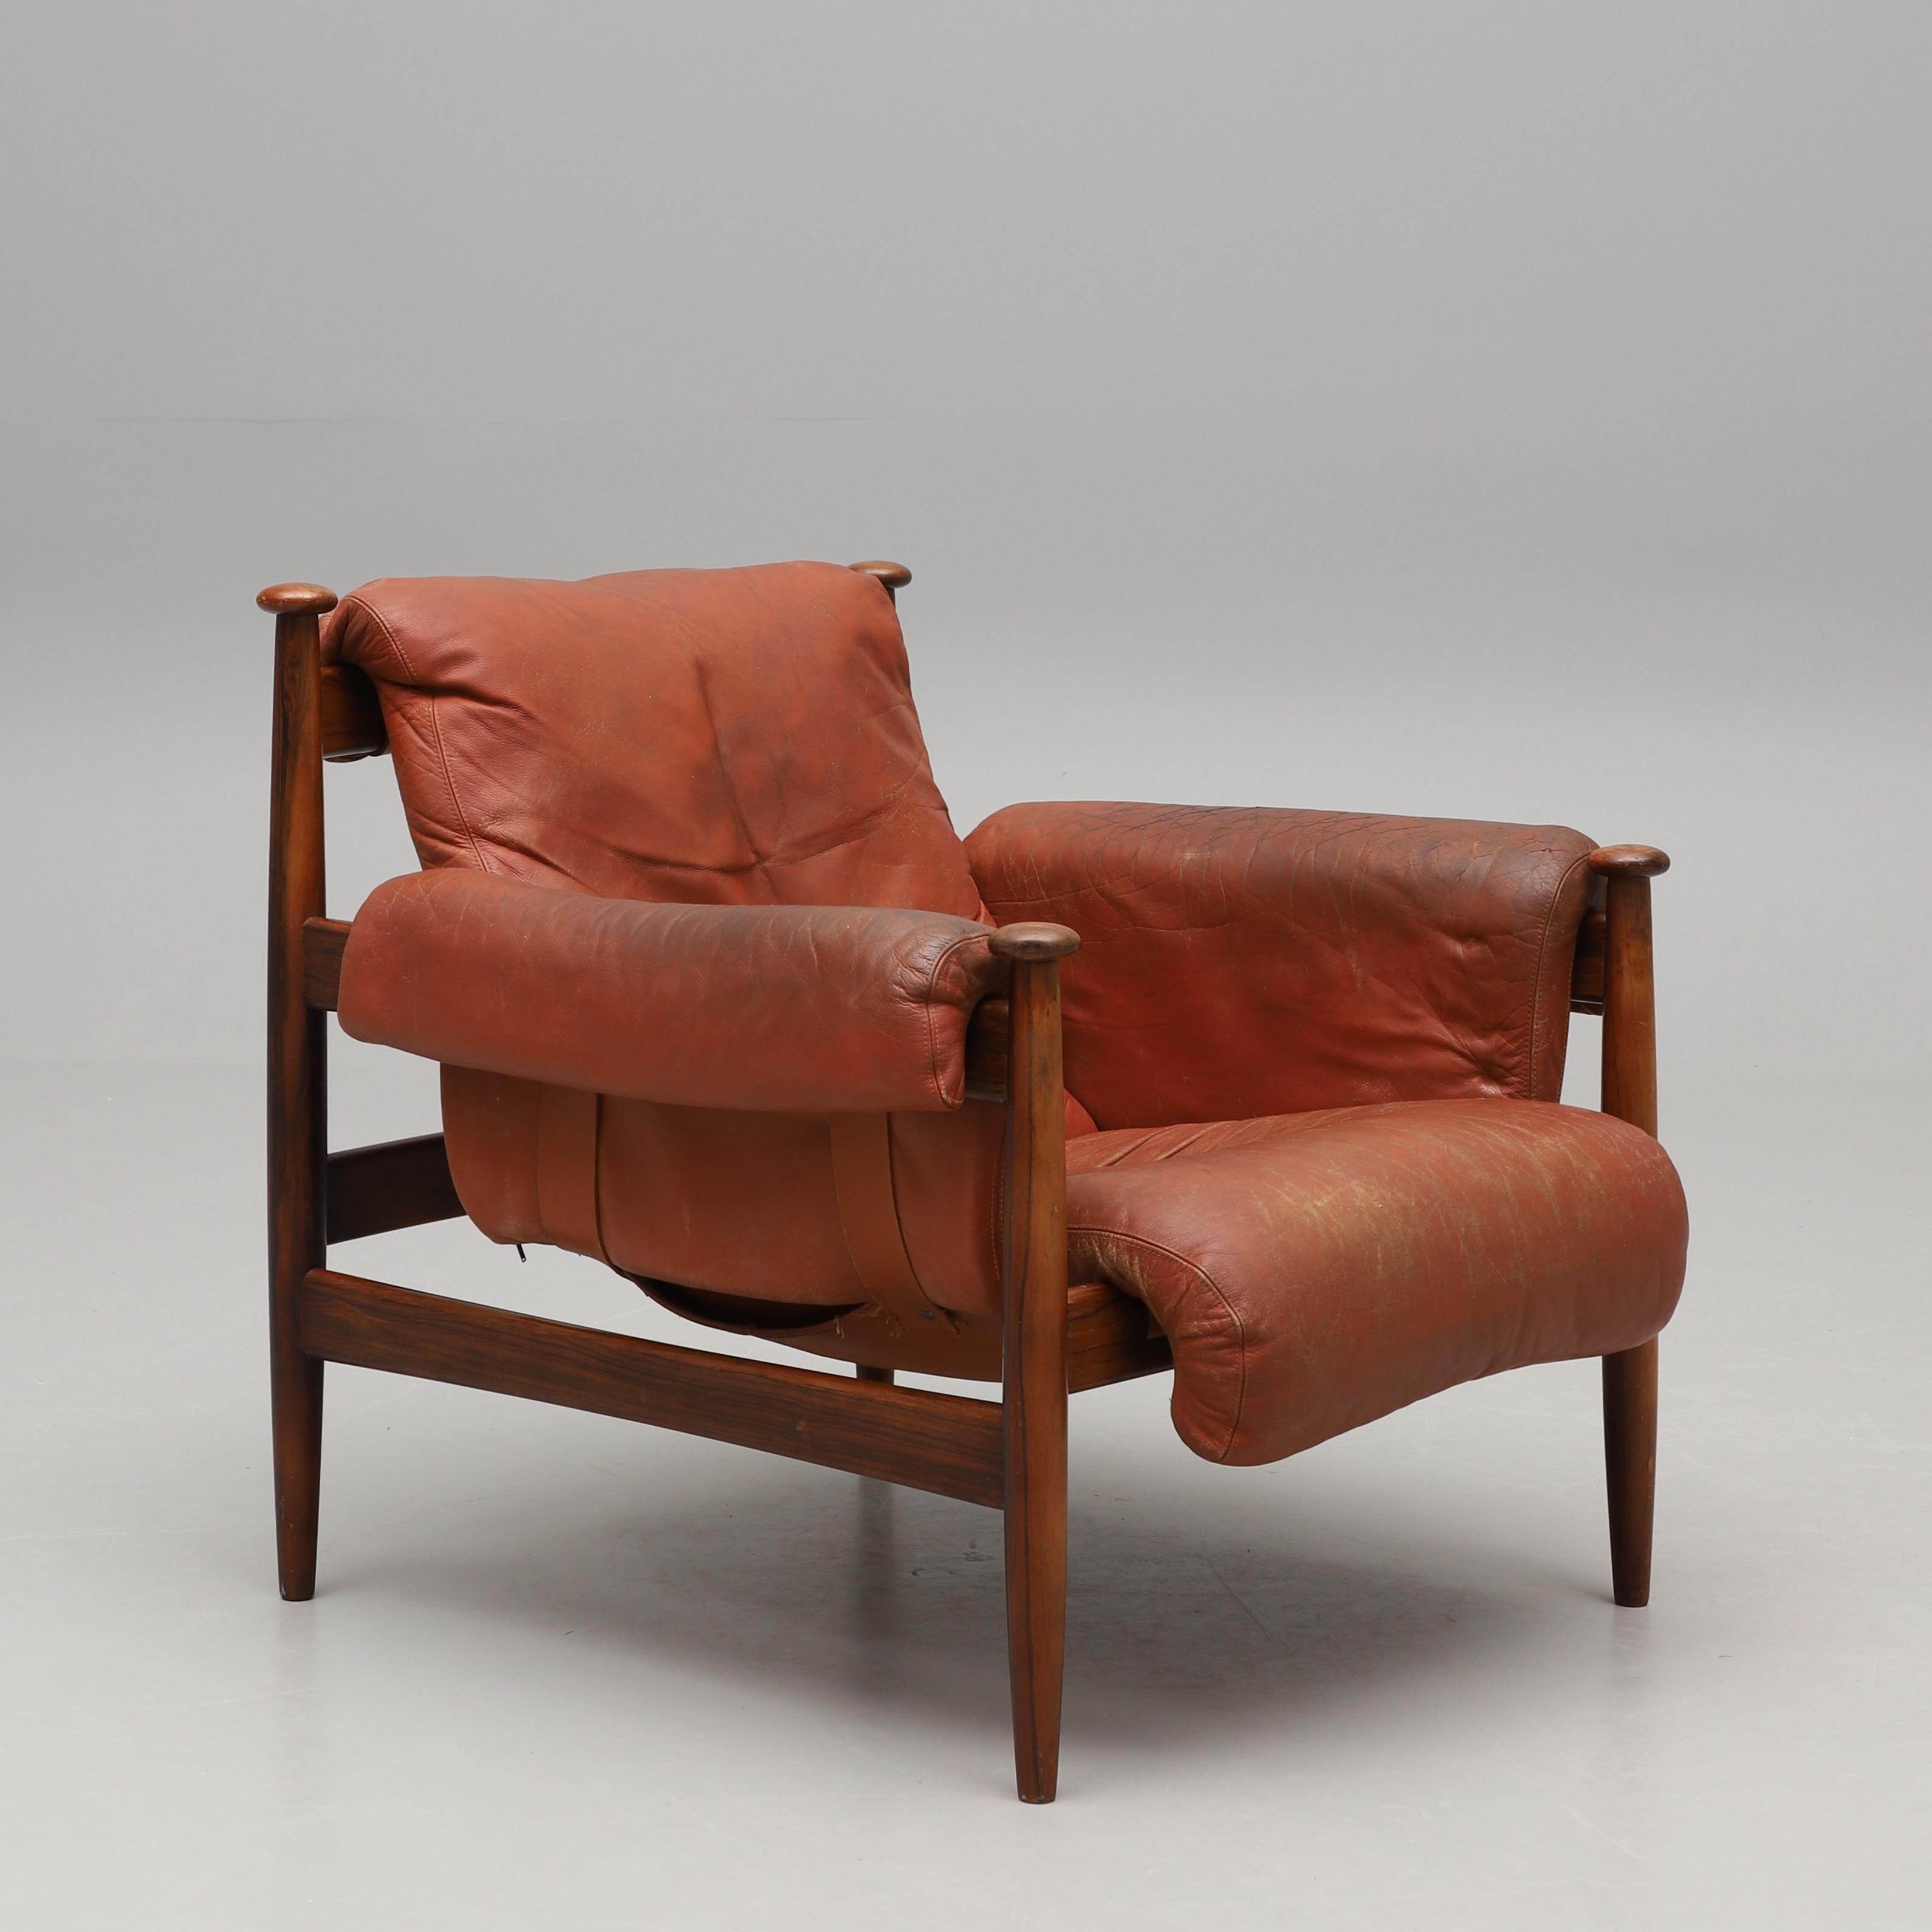 Armiral Stuhl mit Fußhocker, entworfen von Eric Merthen für Ire Mobel Sweden in den 1960er Jahren. Der Stuhl hat einen schönen Palisanderrahmen und ist mit dem originalen Cognacleder bezogen. Das Kissen wird von Lederriemen mit Messingdetails